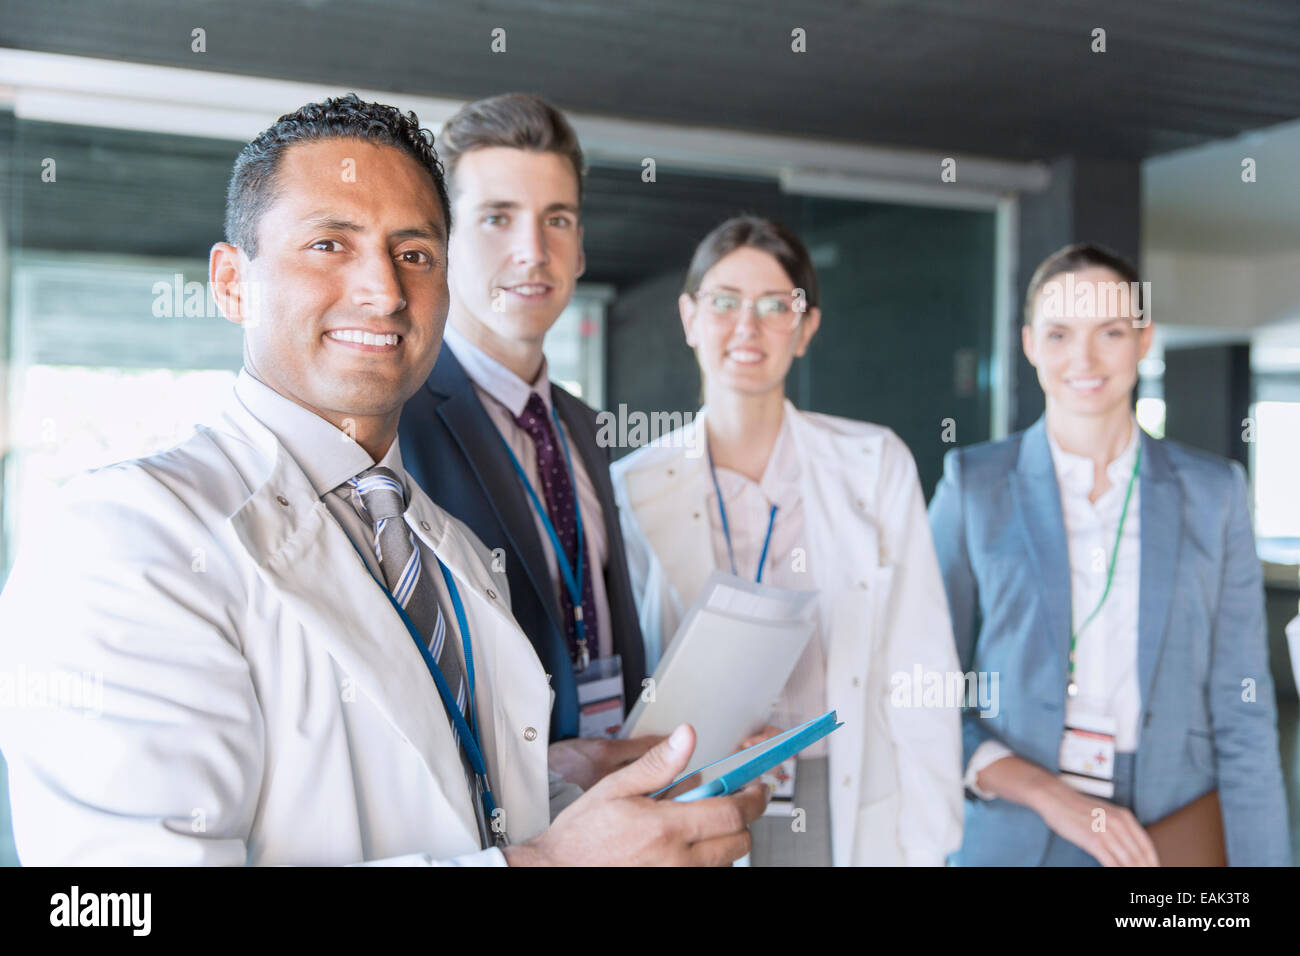 Les scientifiques et les gens d'affaires smiling in laboratory Banque D'Images